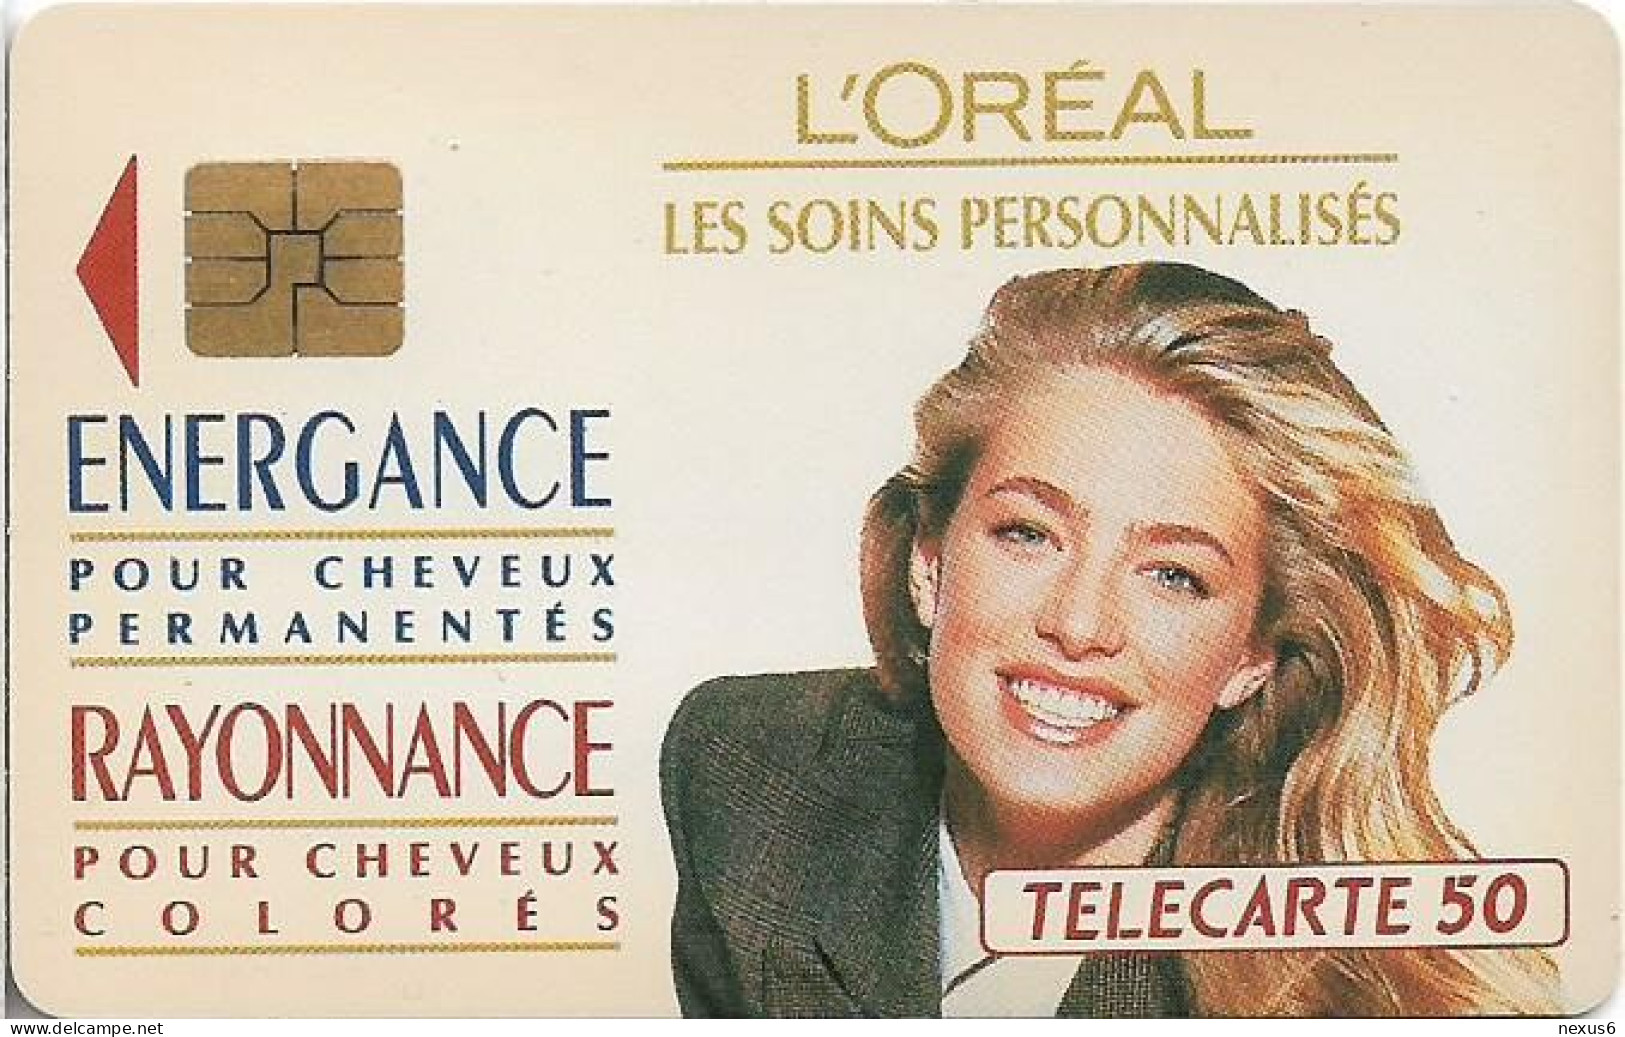 France - En0317 - Energance - Rayonnance, 02.1992, 50Units, 11.500ex, Used - 50 Einheiten